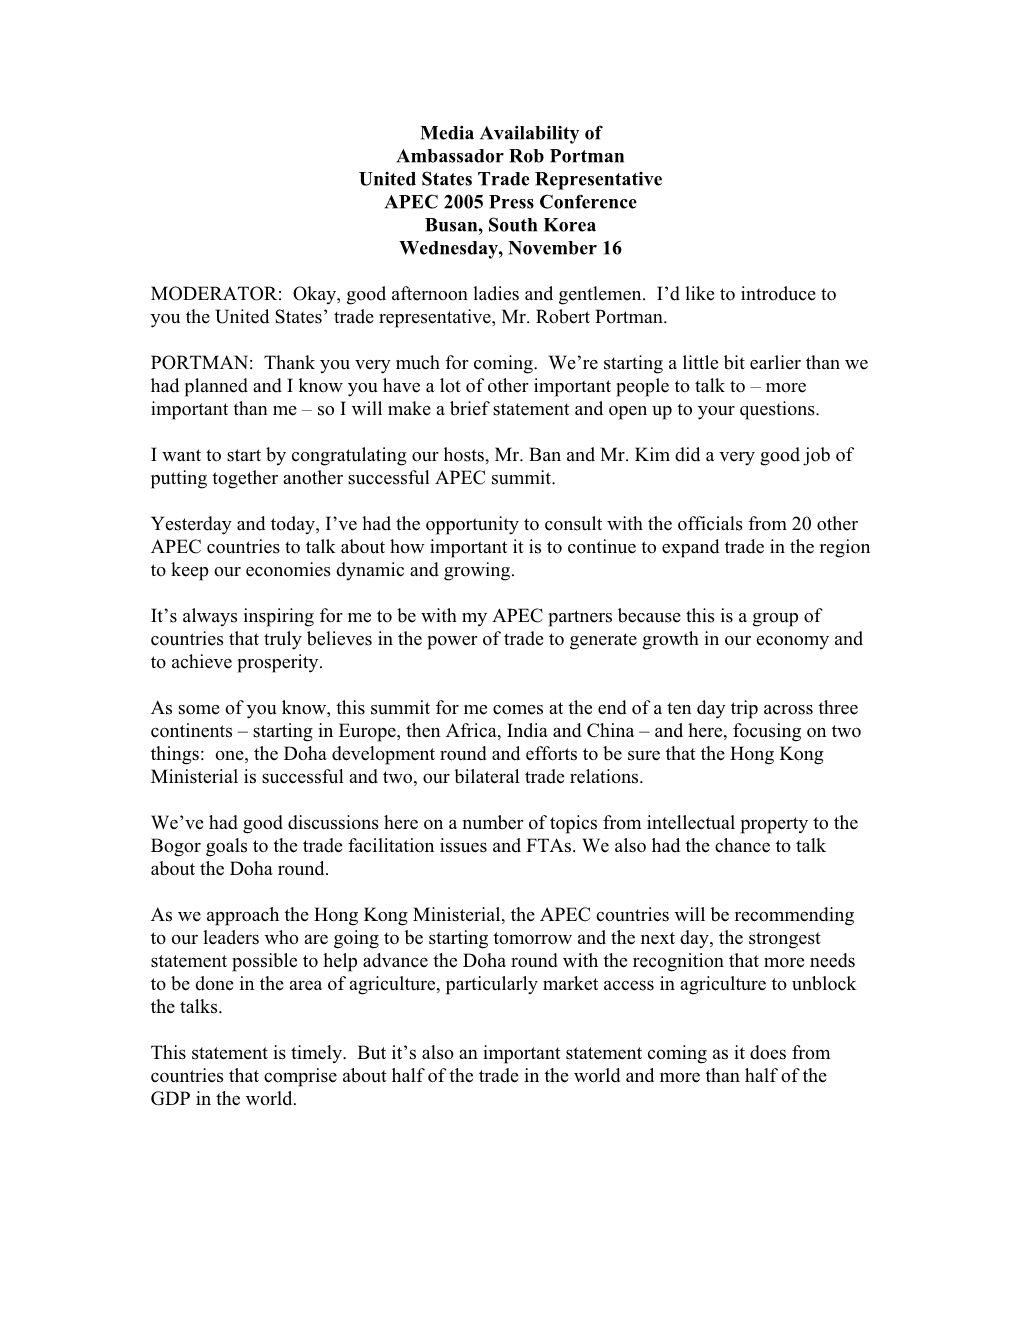 Transcript of Media Availability of USTR Portman at the APEC 2005